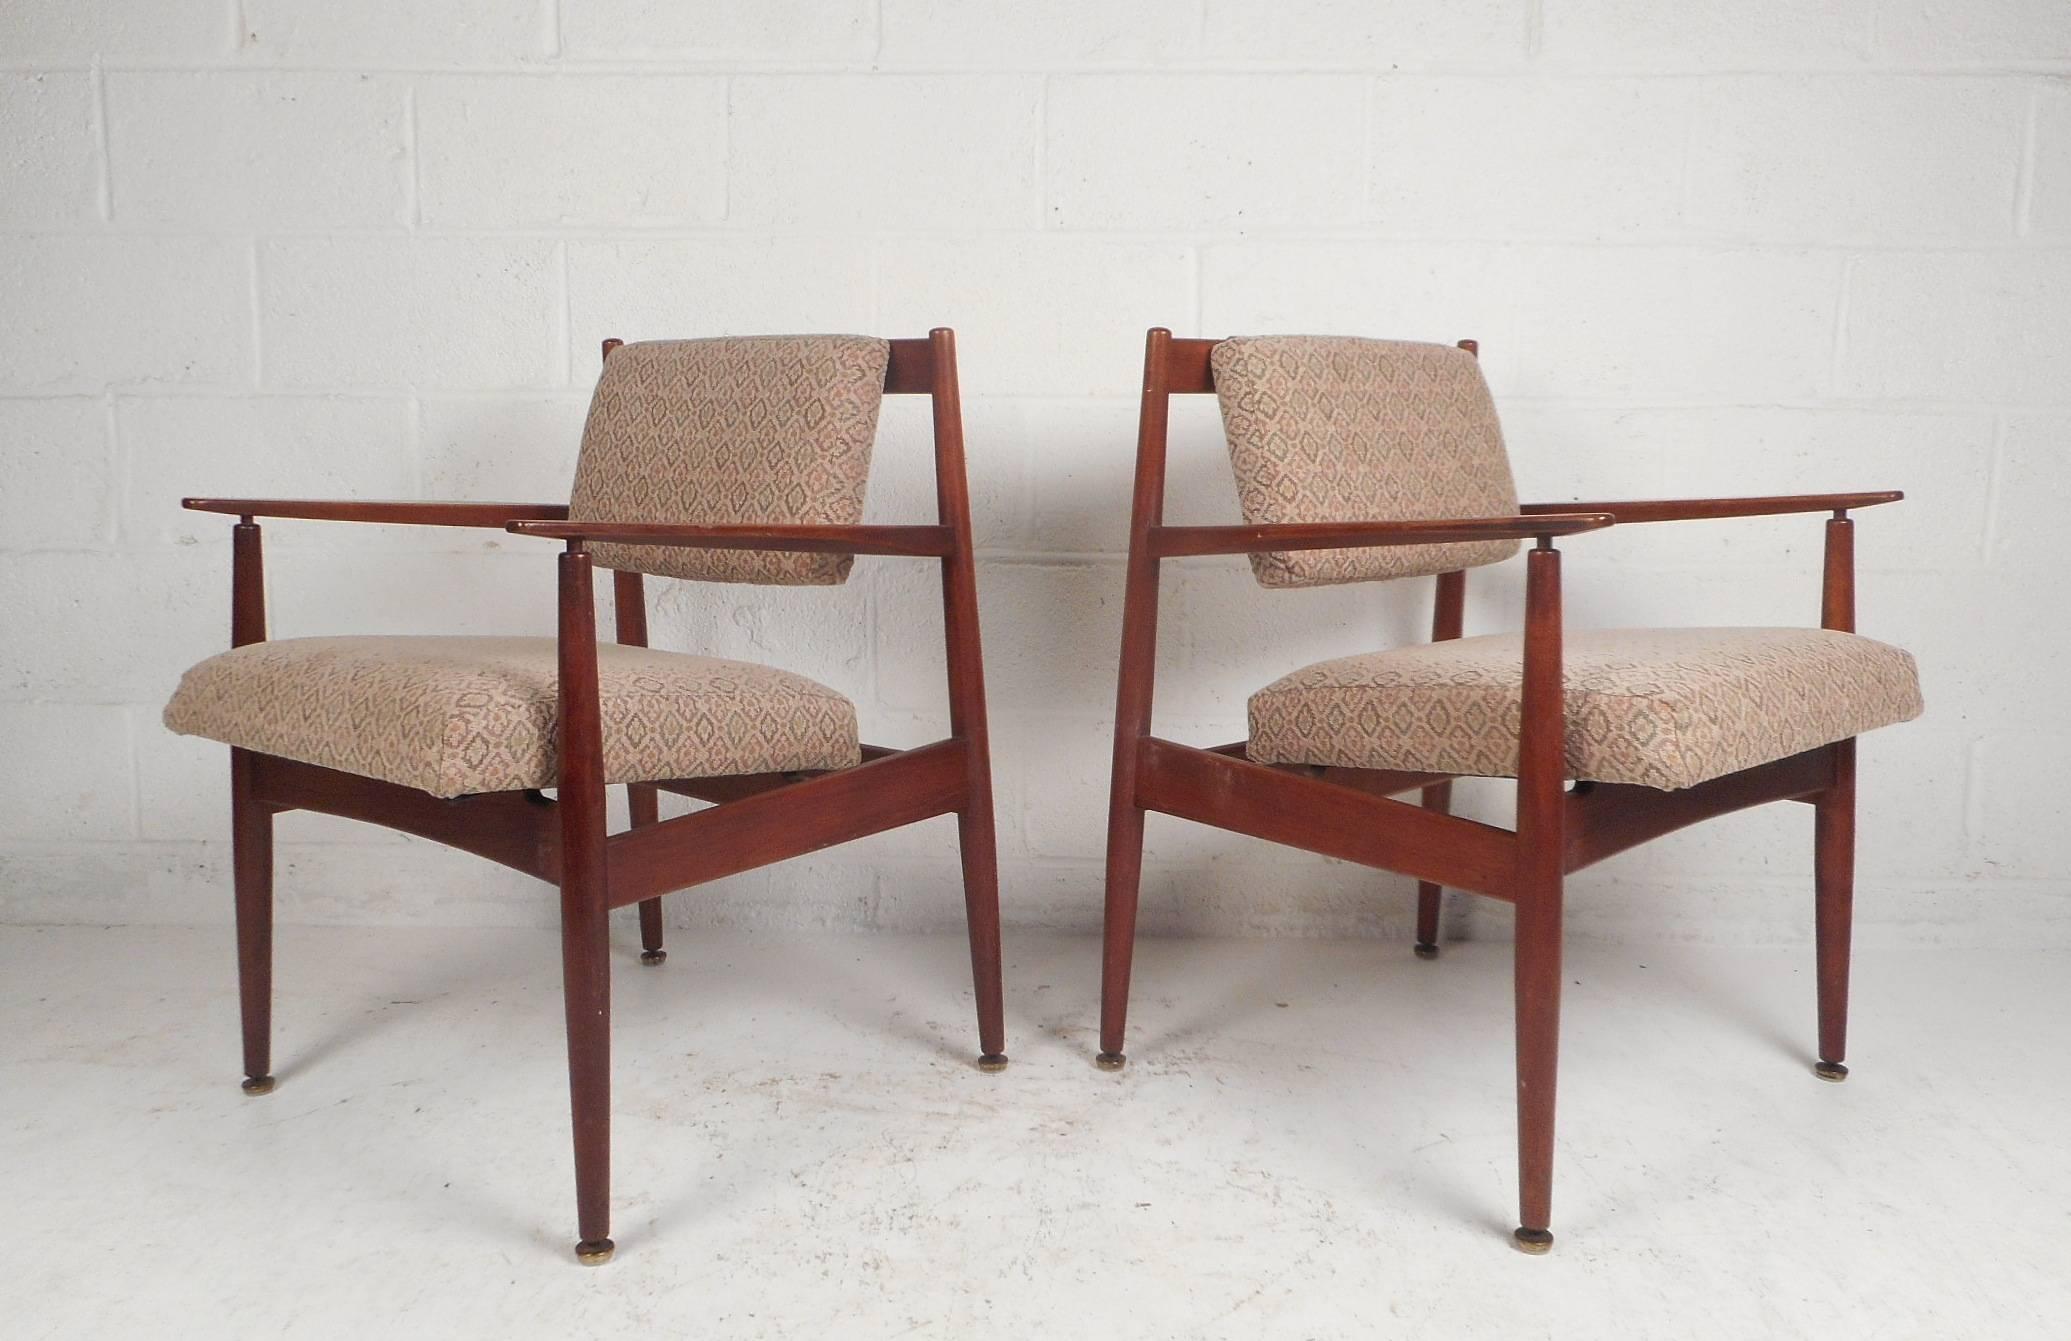 Dieses atemberaubende Paar Mid-Century Modern Sessel von Jens Risom Design verfügt über extrem dick gepolsterte Sitzflächen, eine schwebende Rückenlehne und geformte Armlehnen. Ein stabiler Rahmen aus Nussbaumholz und eine schöne, dekorative